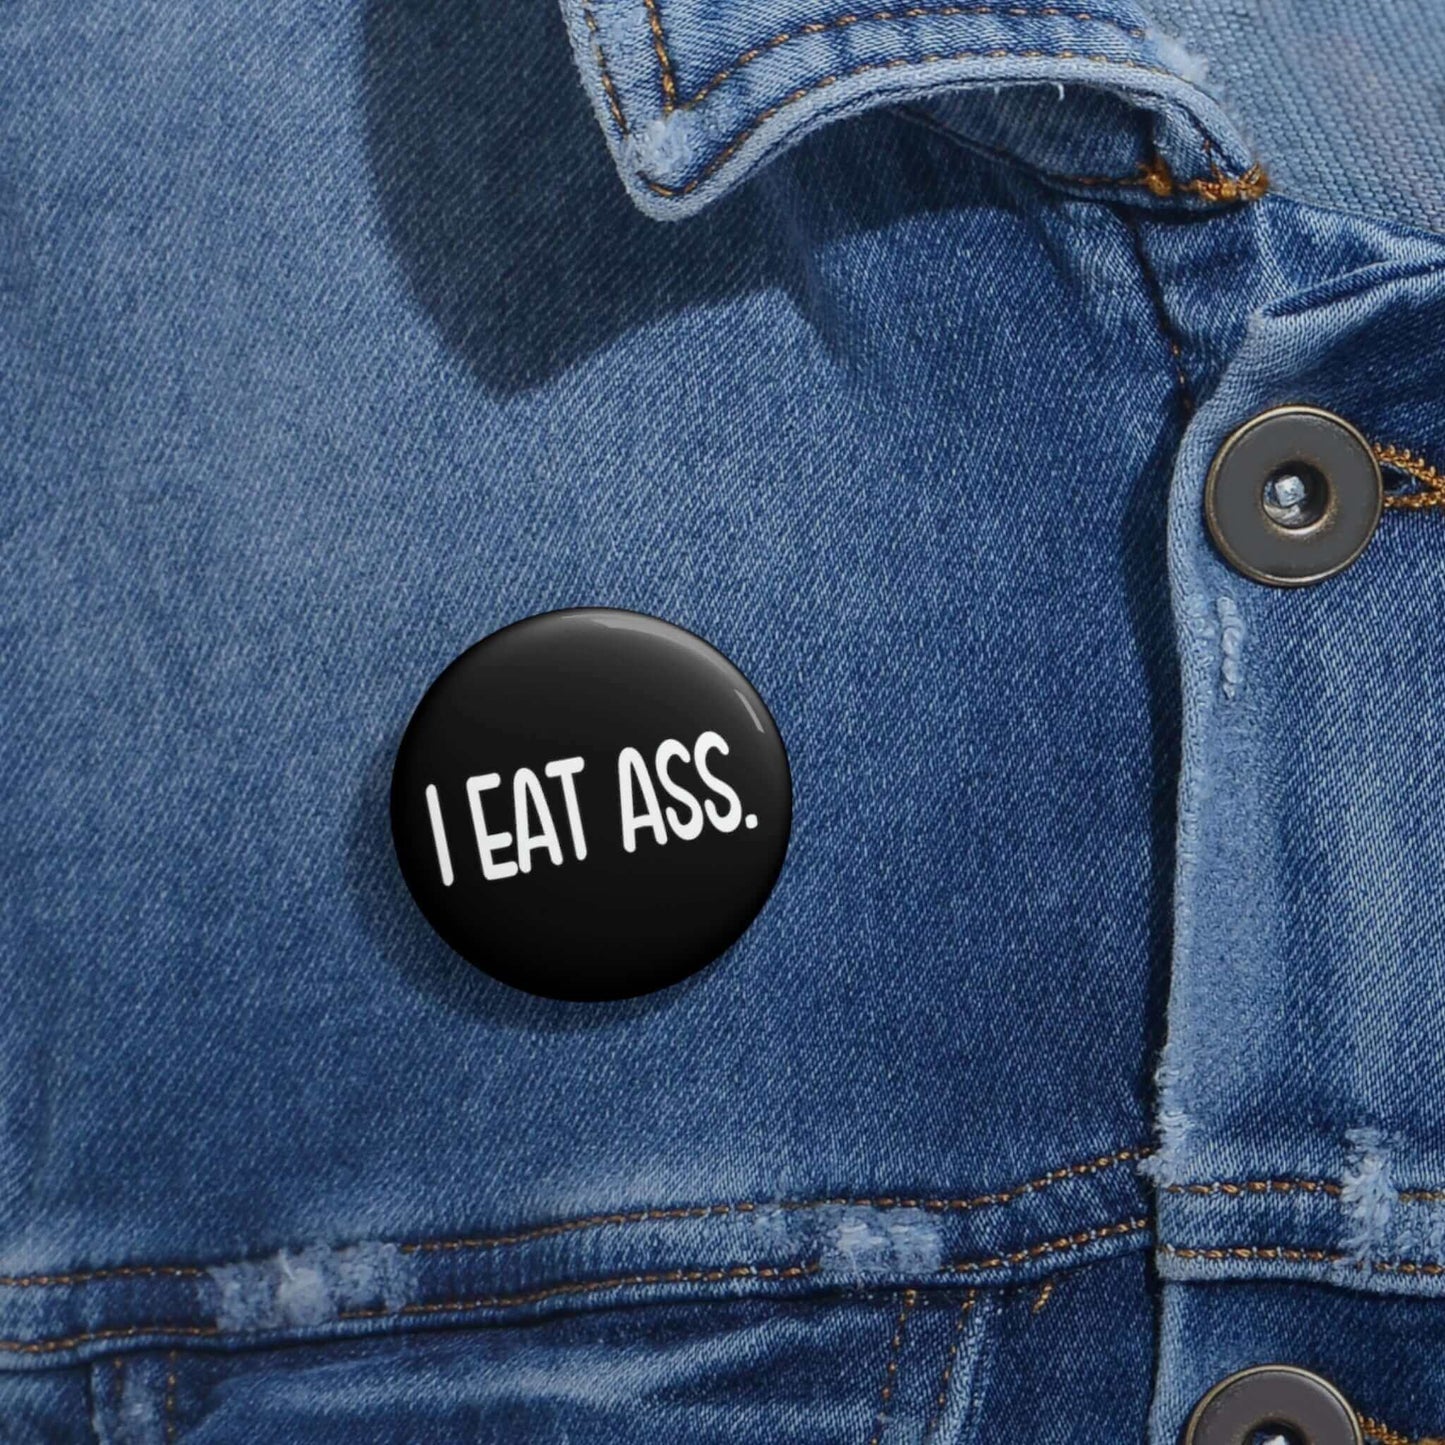 I eat ass pin-back button